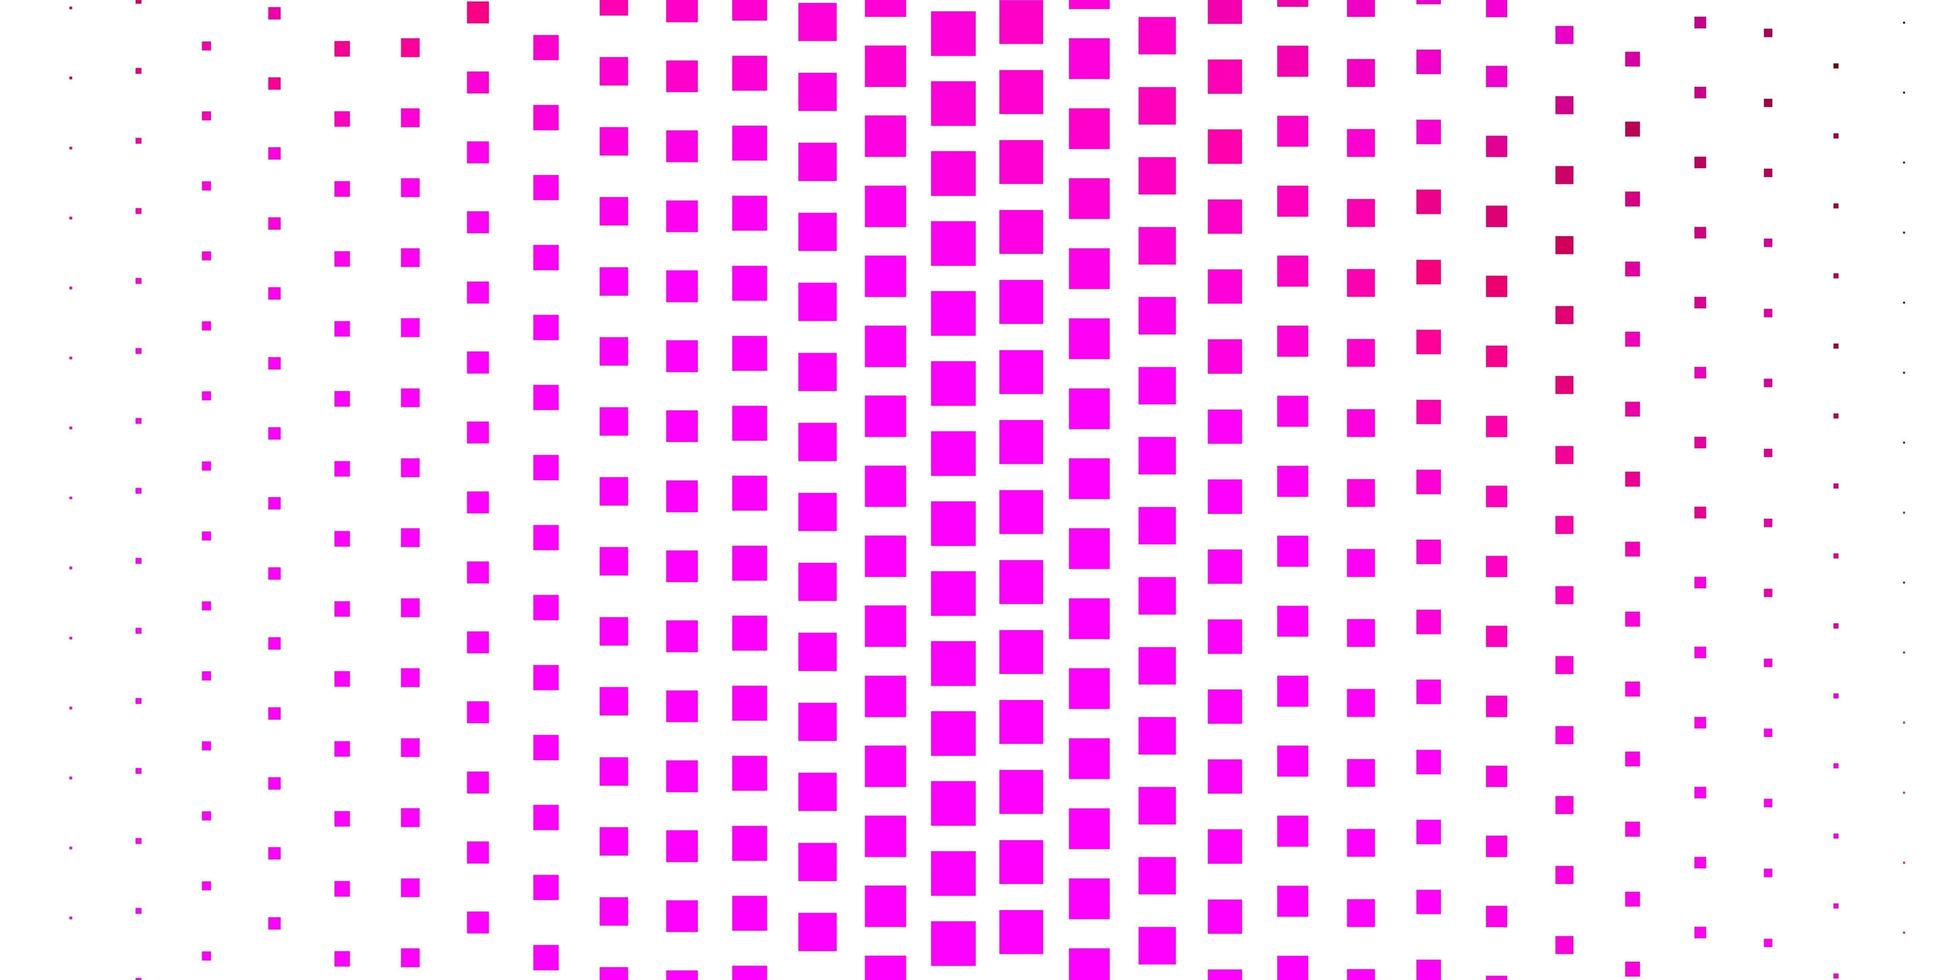 toile de fond de vecteur rose foncé avec des rectangles.